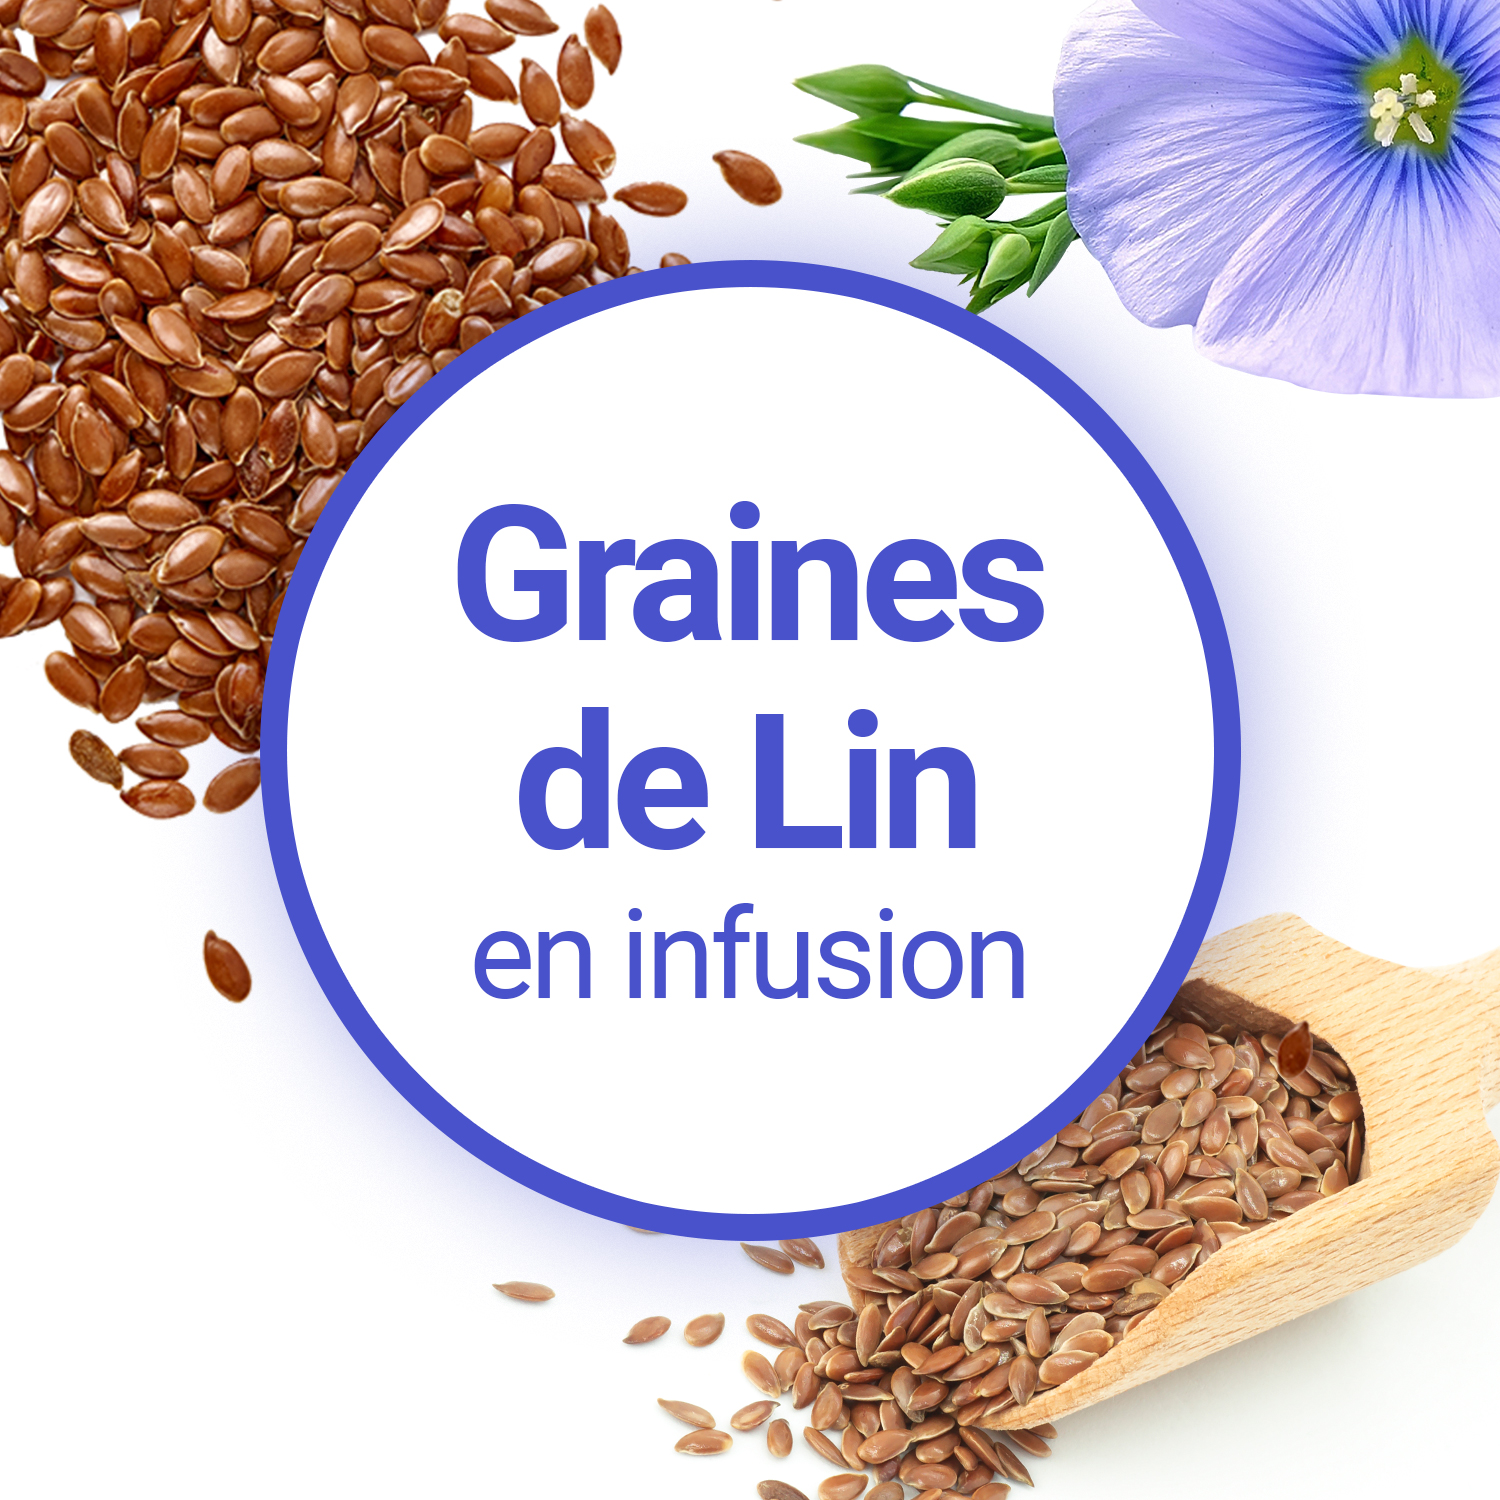 Graines de lin - Acheter, bienfaits et recettes